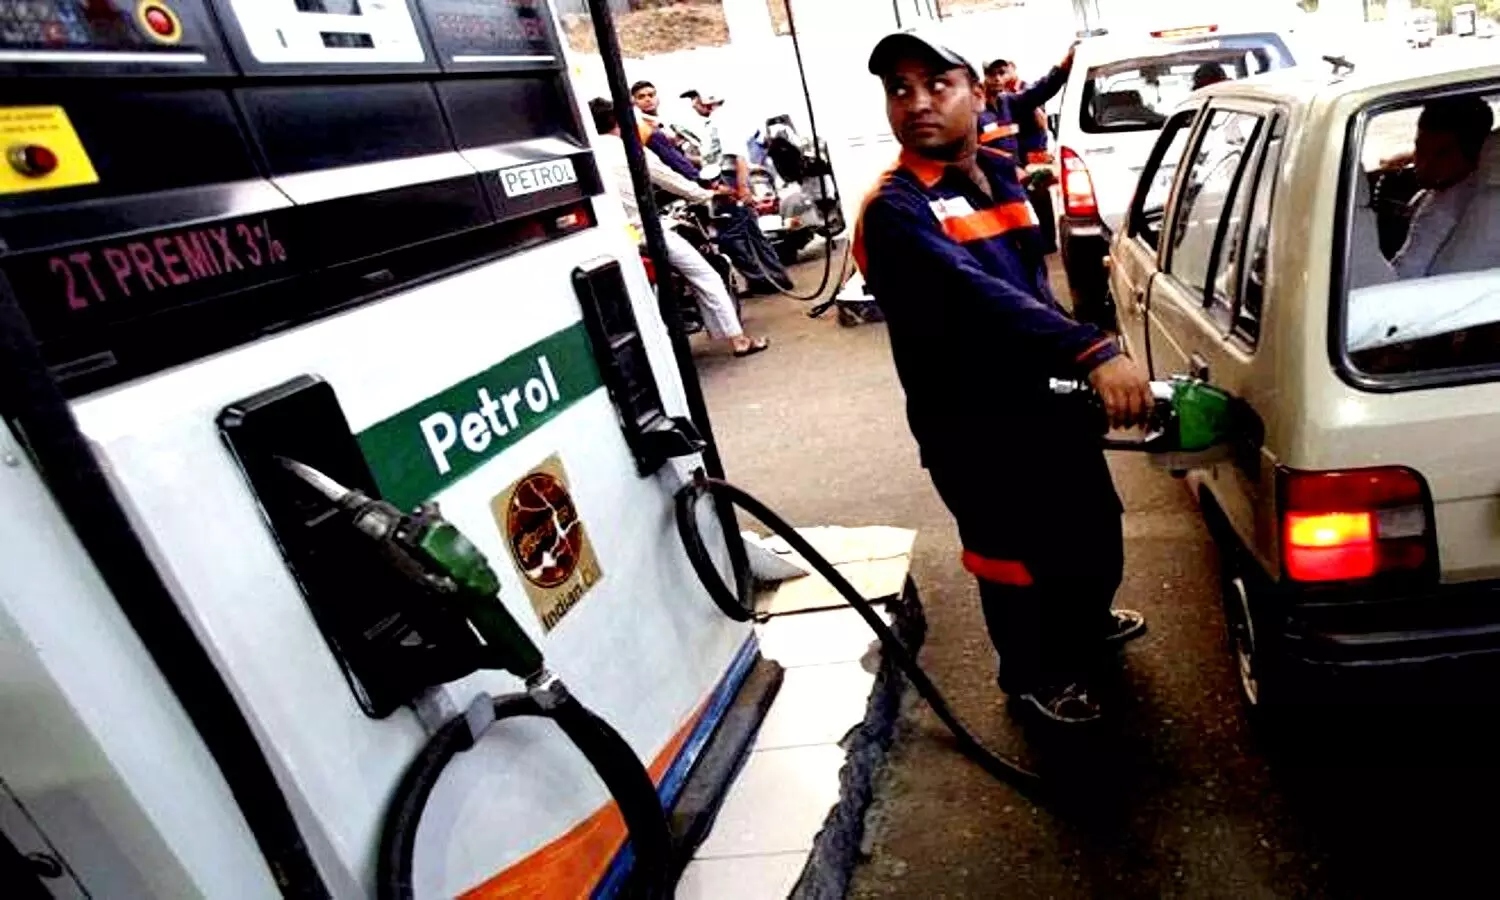 Petrol Pumps in Lucknow: लखनऊ के टॉप 10 पेट्रोल पंप, पता देखकर यहां का एक बार जरूर लें अनुभव